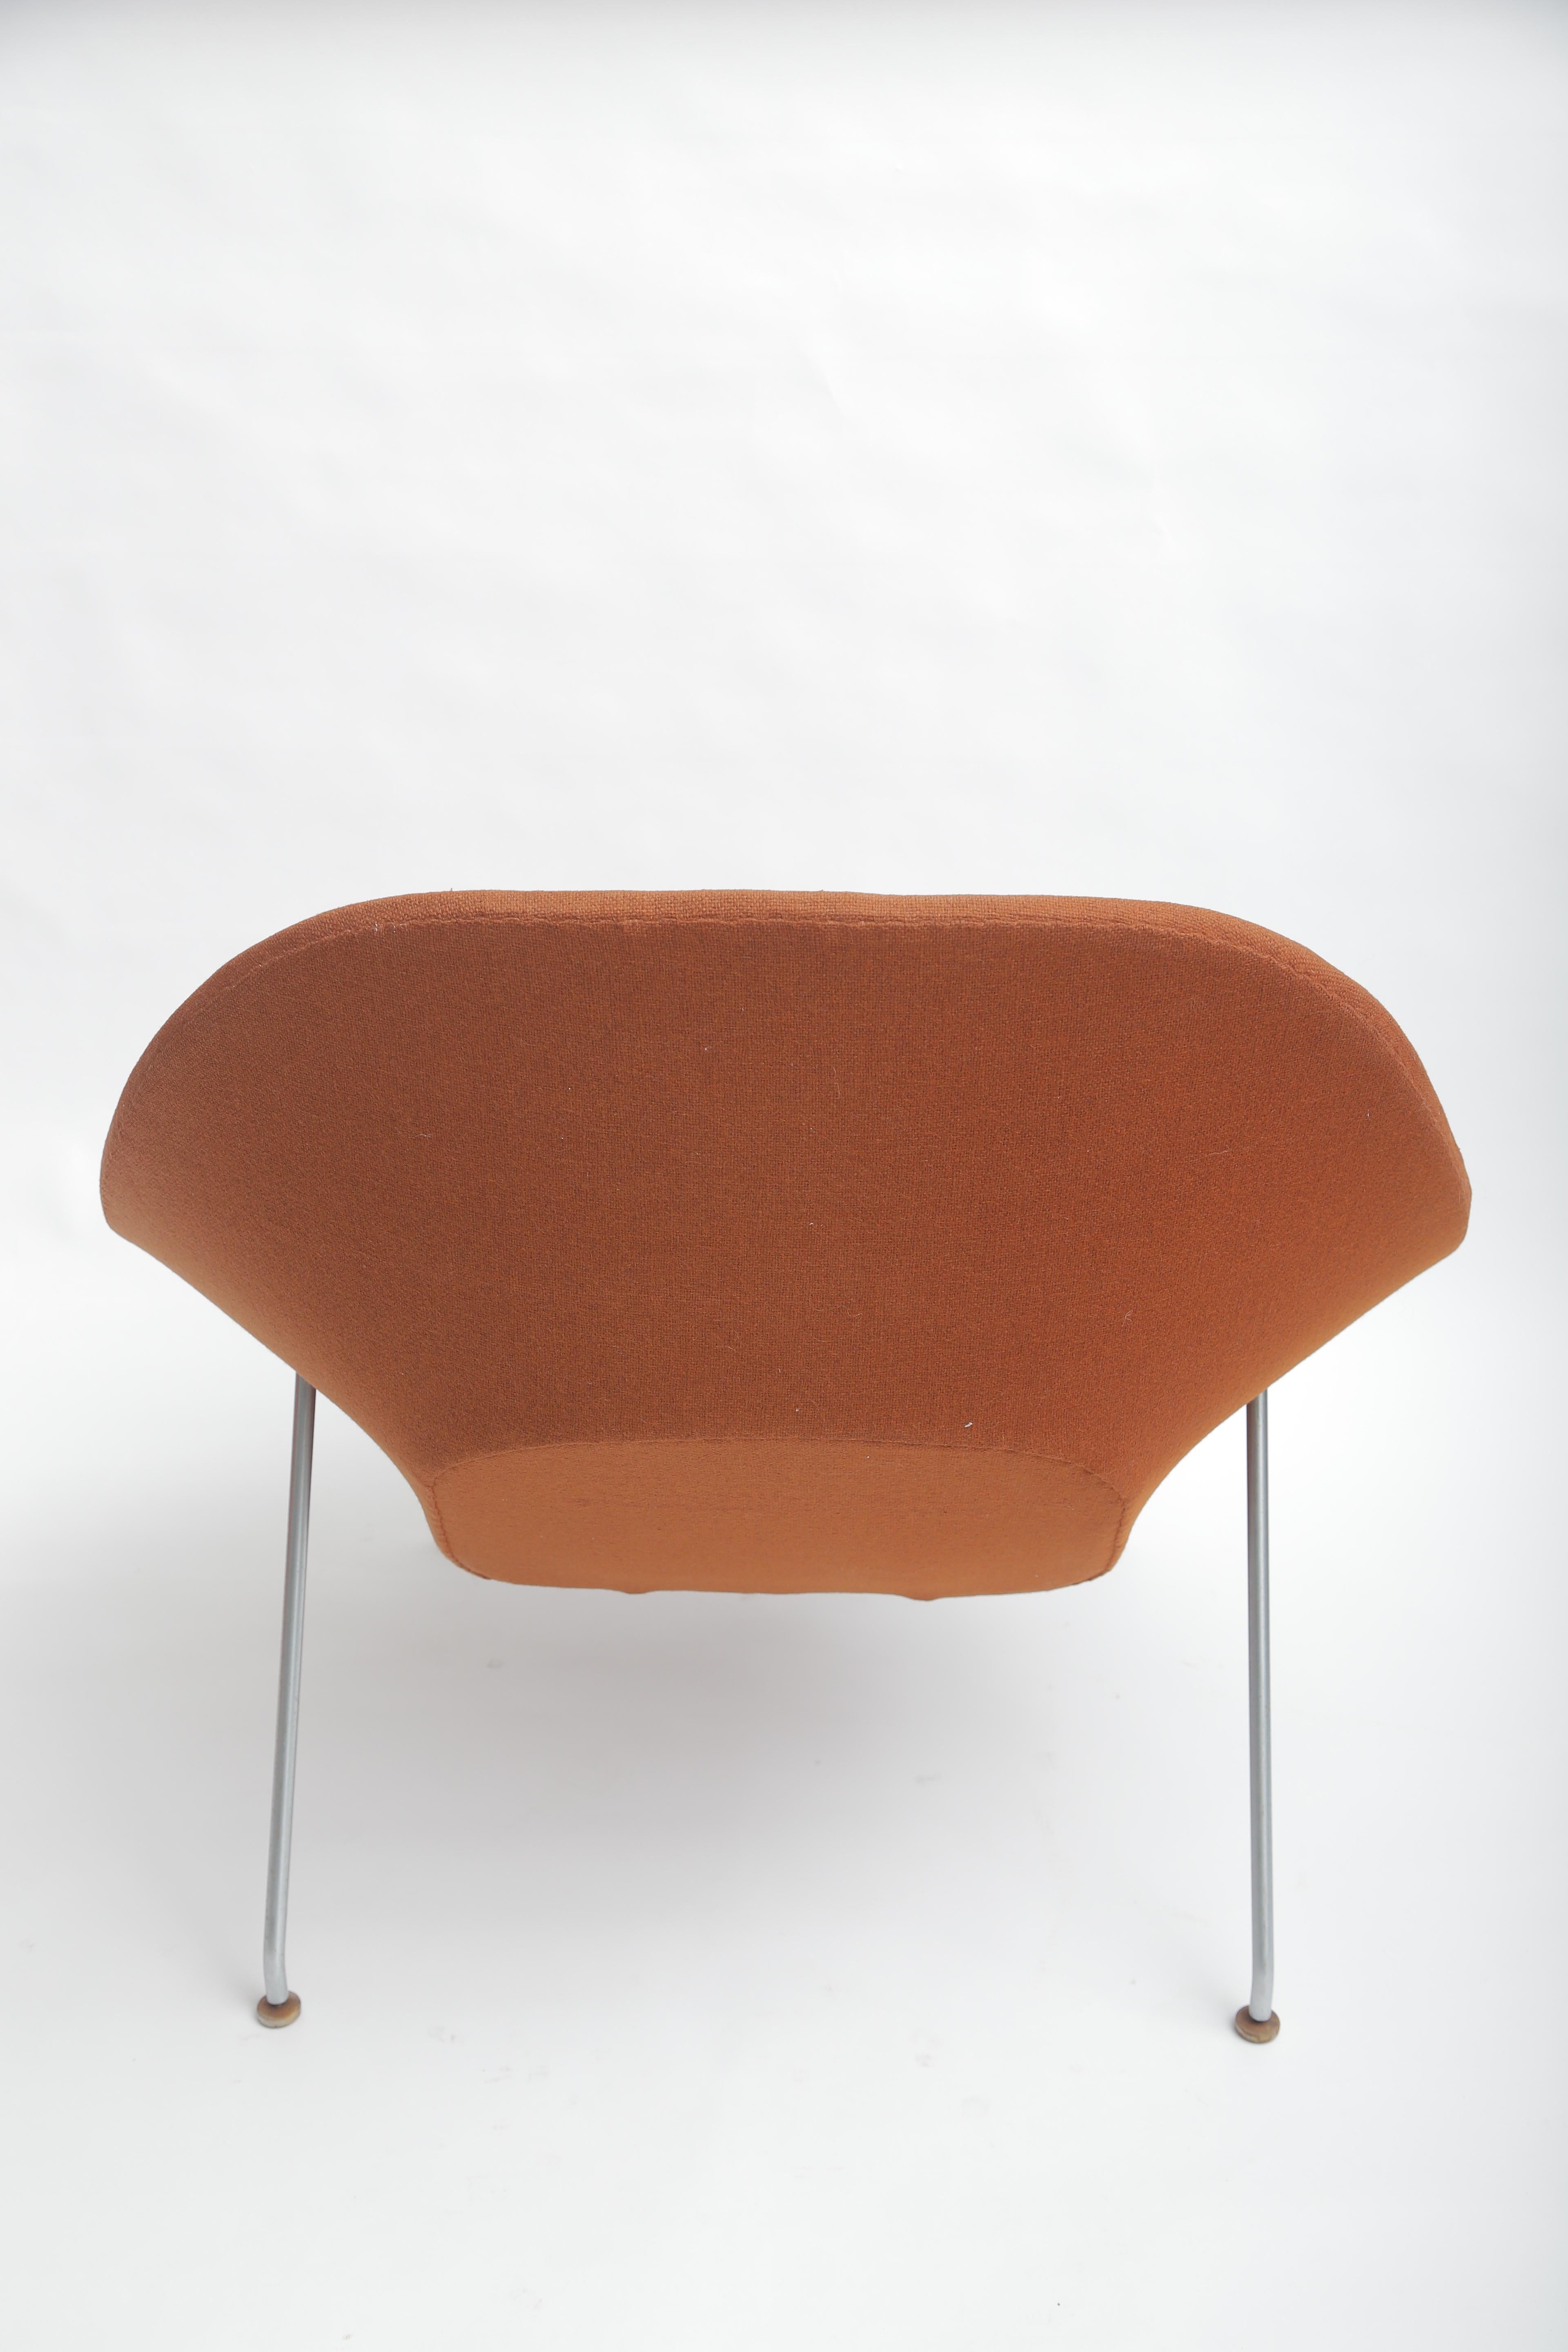 Eero Saarinen Womb Chair and Ottoman 1